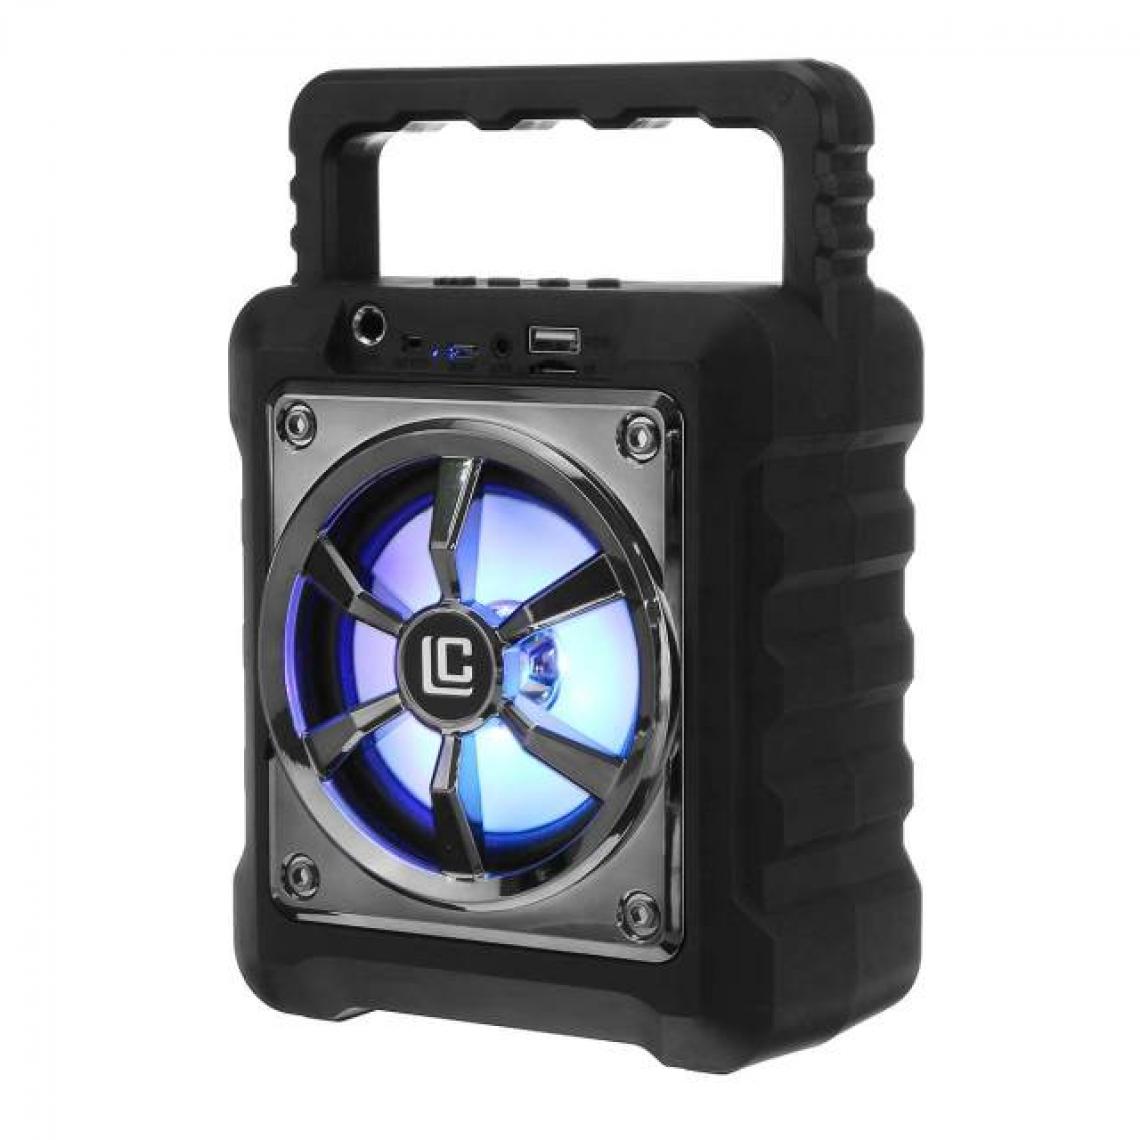 Universal - Haut-parleur Bluetooth portable noir avec microphone imperméable extérieur sans fil musique stéréo subwoofer HiFi son support FM TF AUX | Haut-parleur portable - Hauts-parleurs